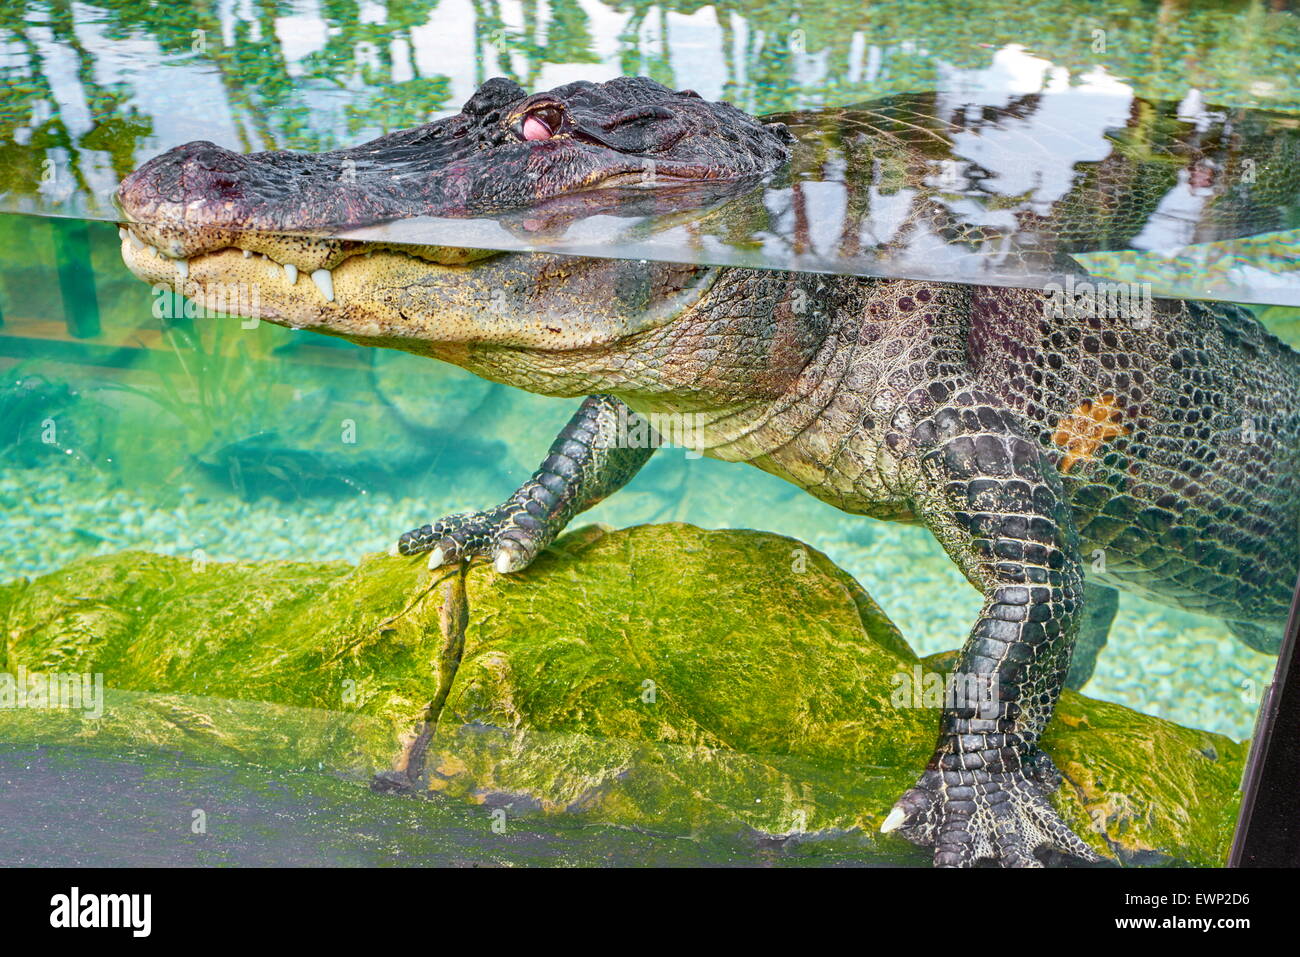 Loro Parque, crocodile in aquarium. Puerto de la Cruz, Tenerife, Canary Islands, Spain Stock Photo